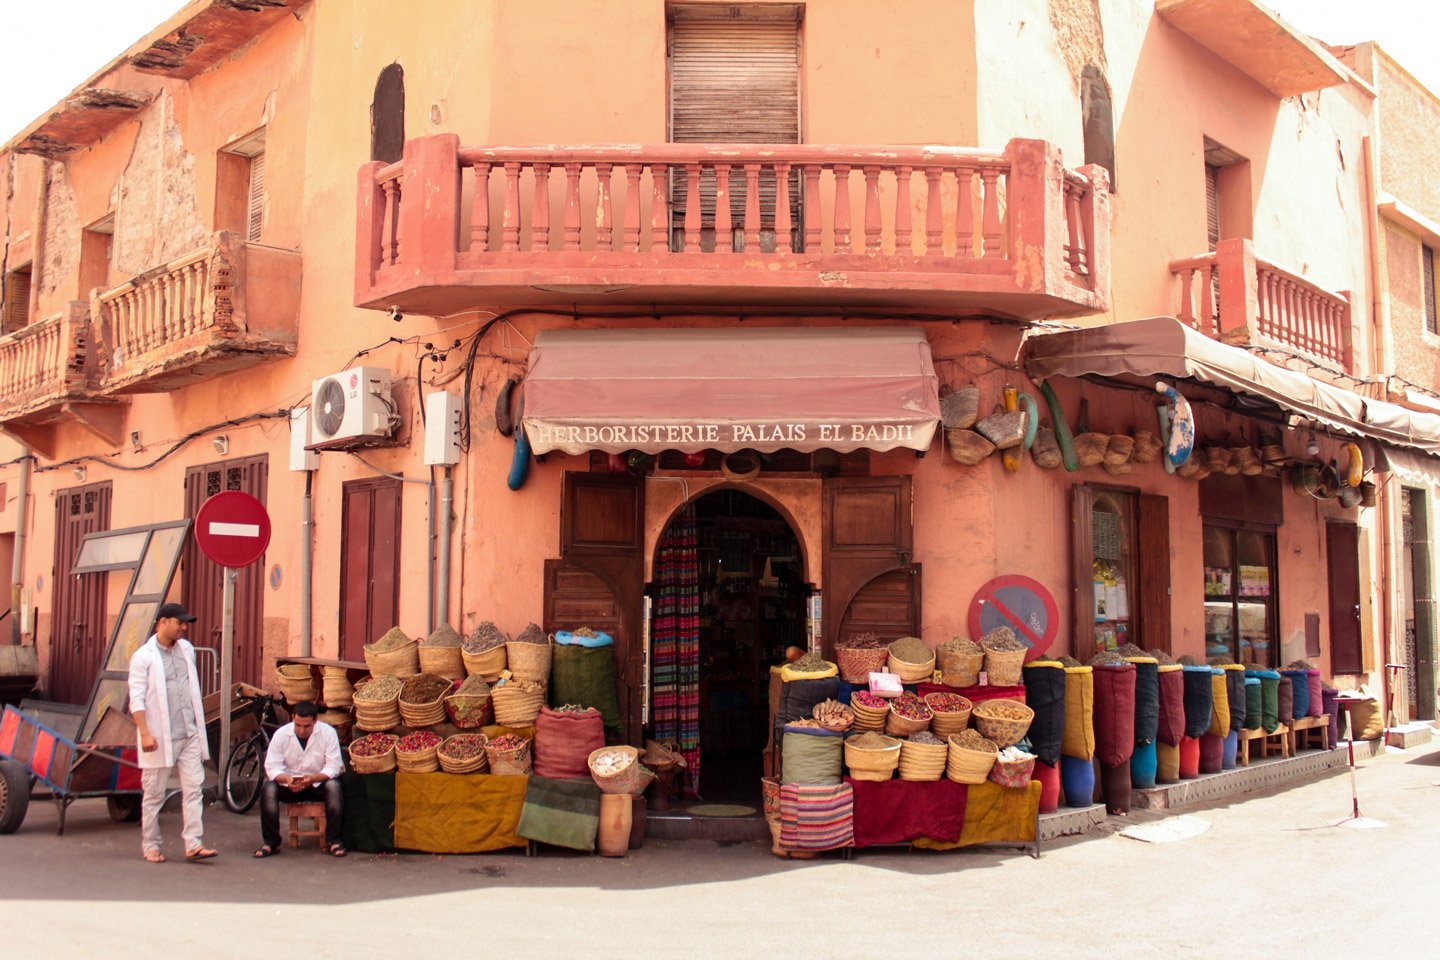 Calles en el barrio Judio, Marrakech.